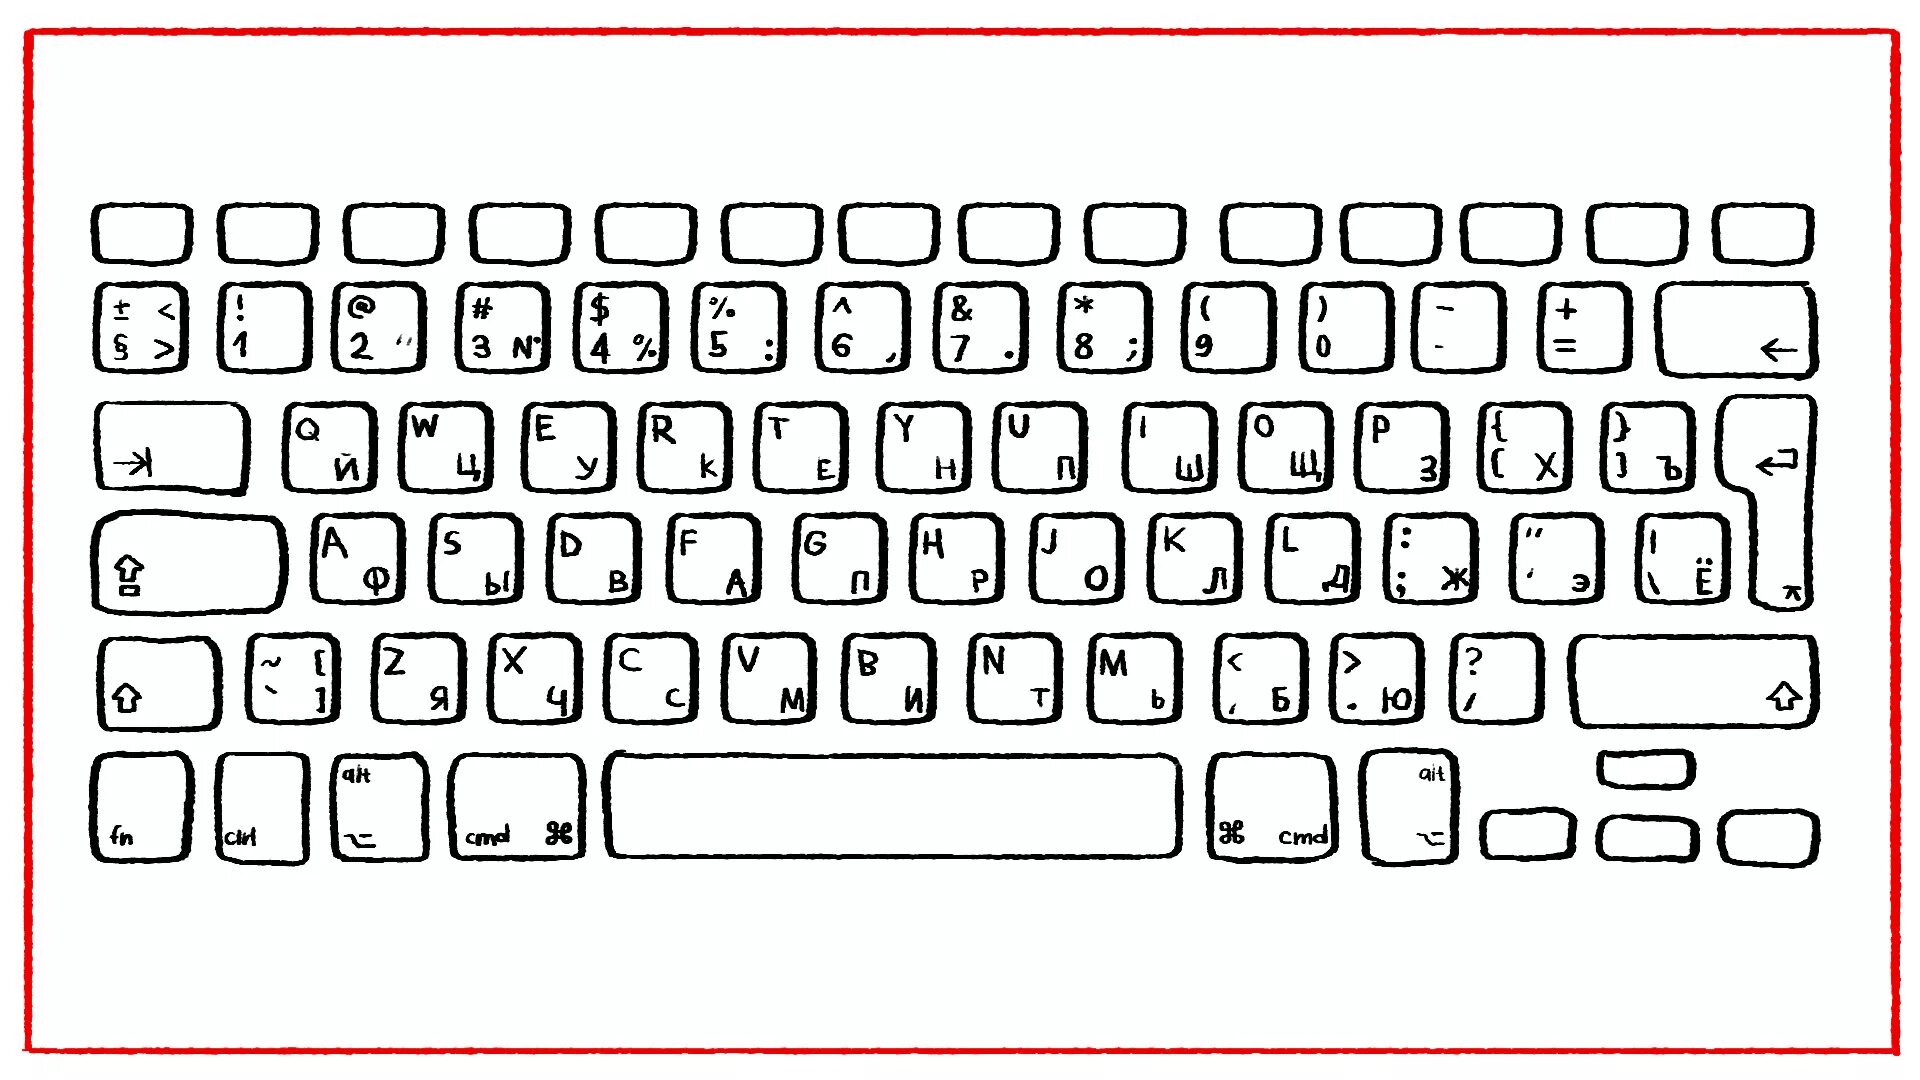 Компьютерная клавиатура раскладка русская и английская. Распечатка клавиатуры компьютера. Клавиатура для раскрашивания. Клавиатура компьютера раскраска.